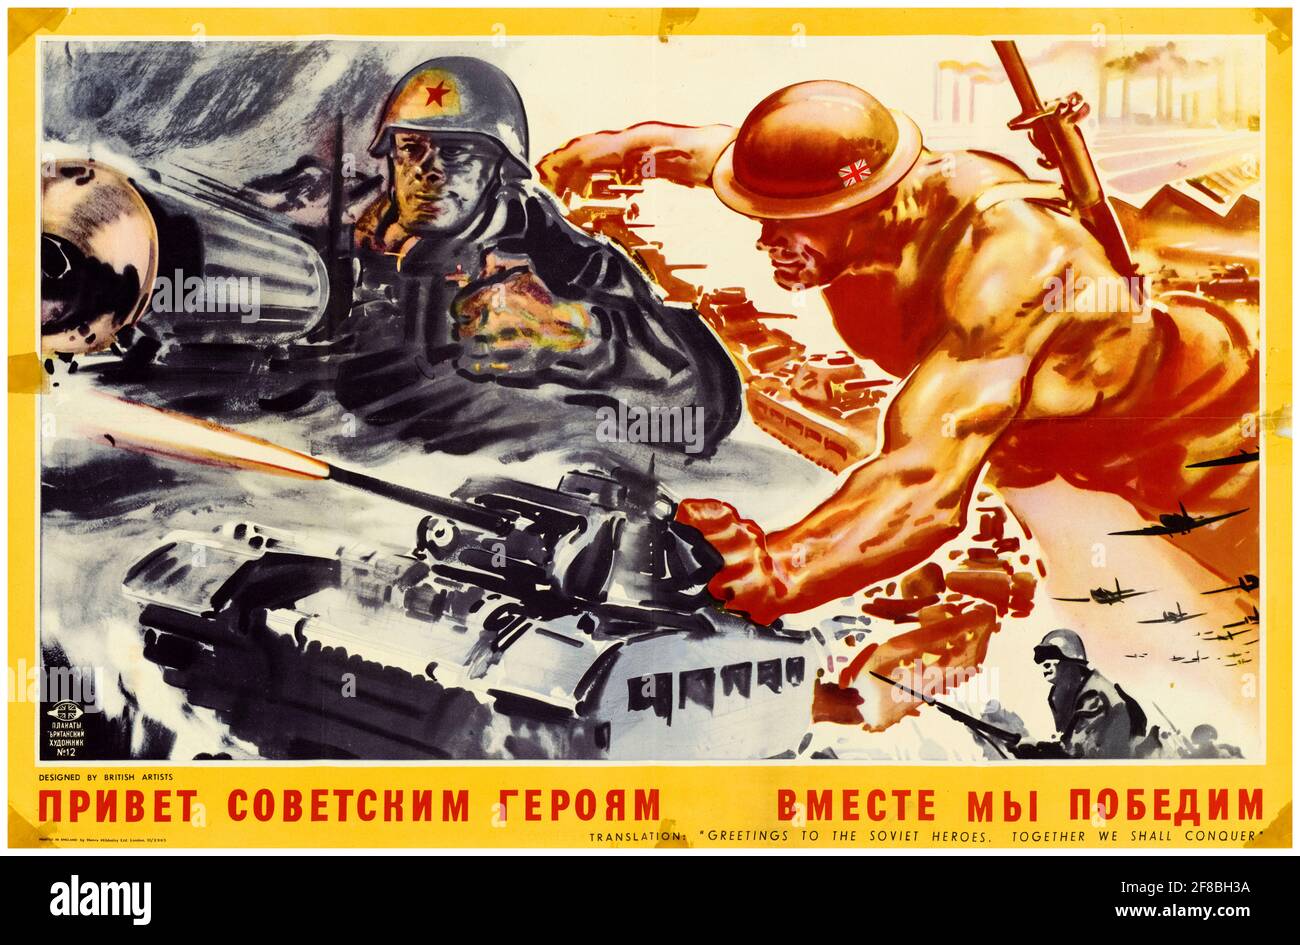 Britannique, affiche de coopération interalliée de la Seconde Guerre mondiale, Grande-Bretagne et Russie: Salutations aux héros soviétiques, ensemble, nous allons conquérir, 1942-1945 Banque D'Images